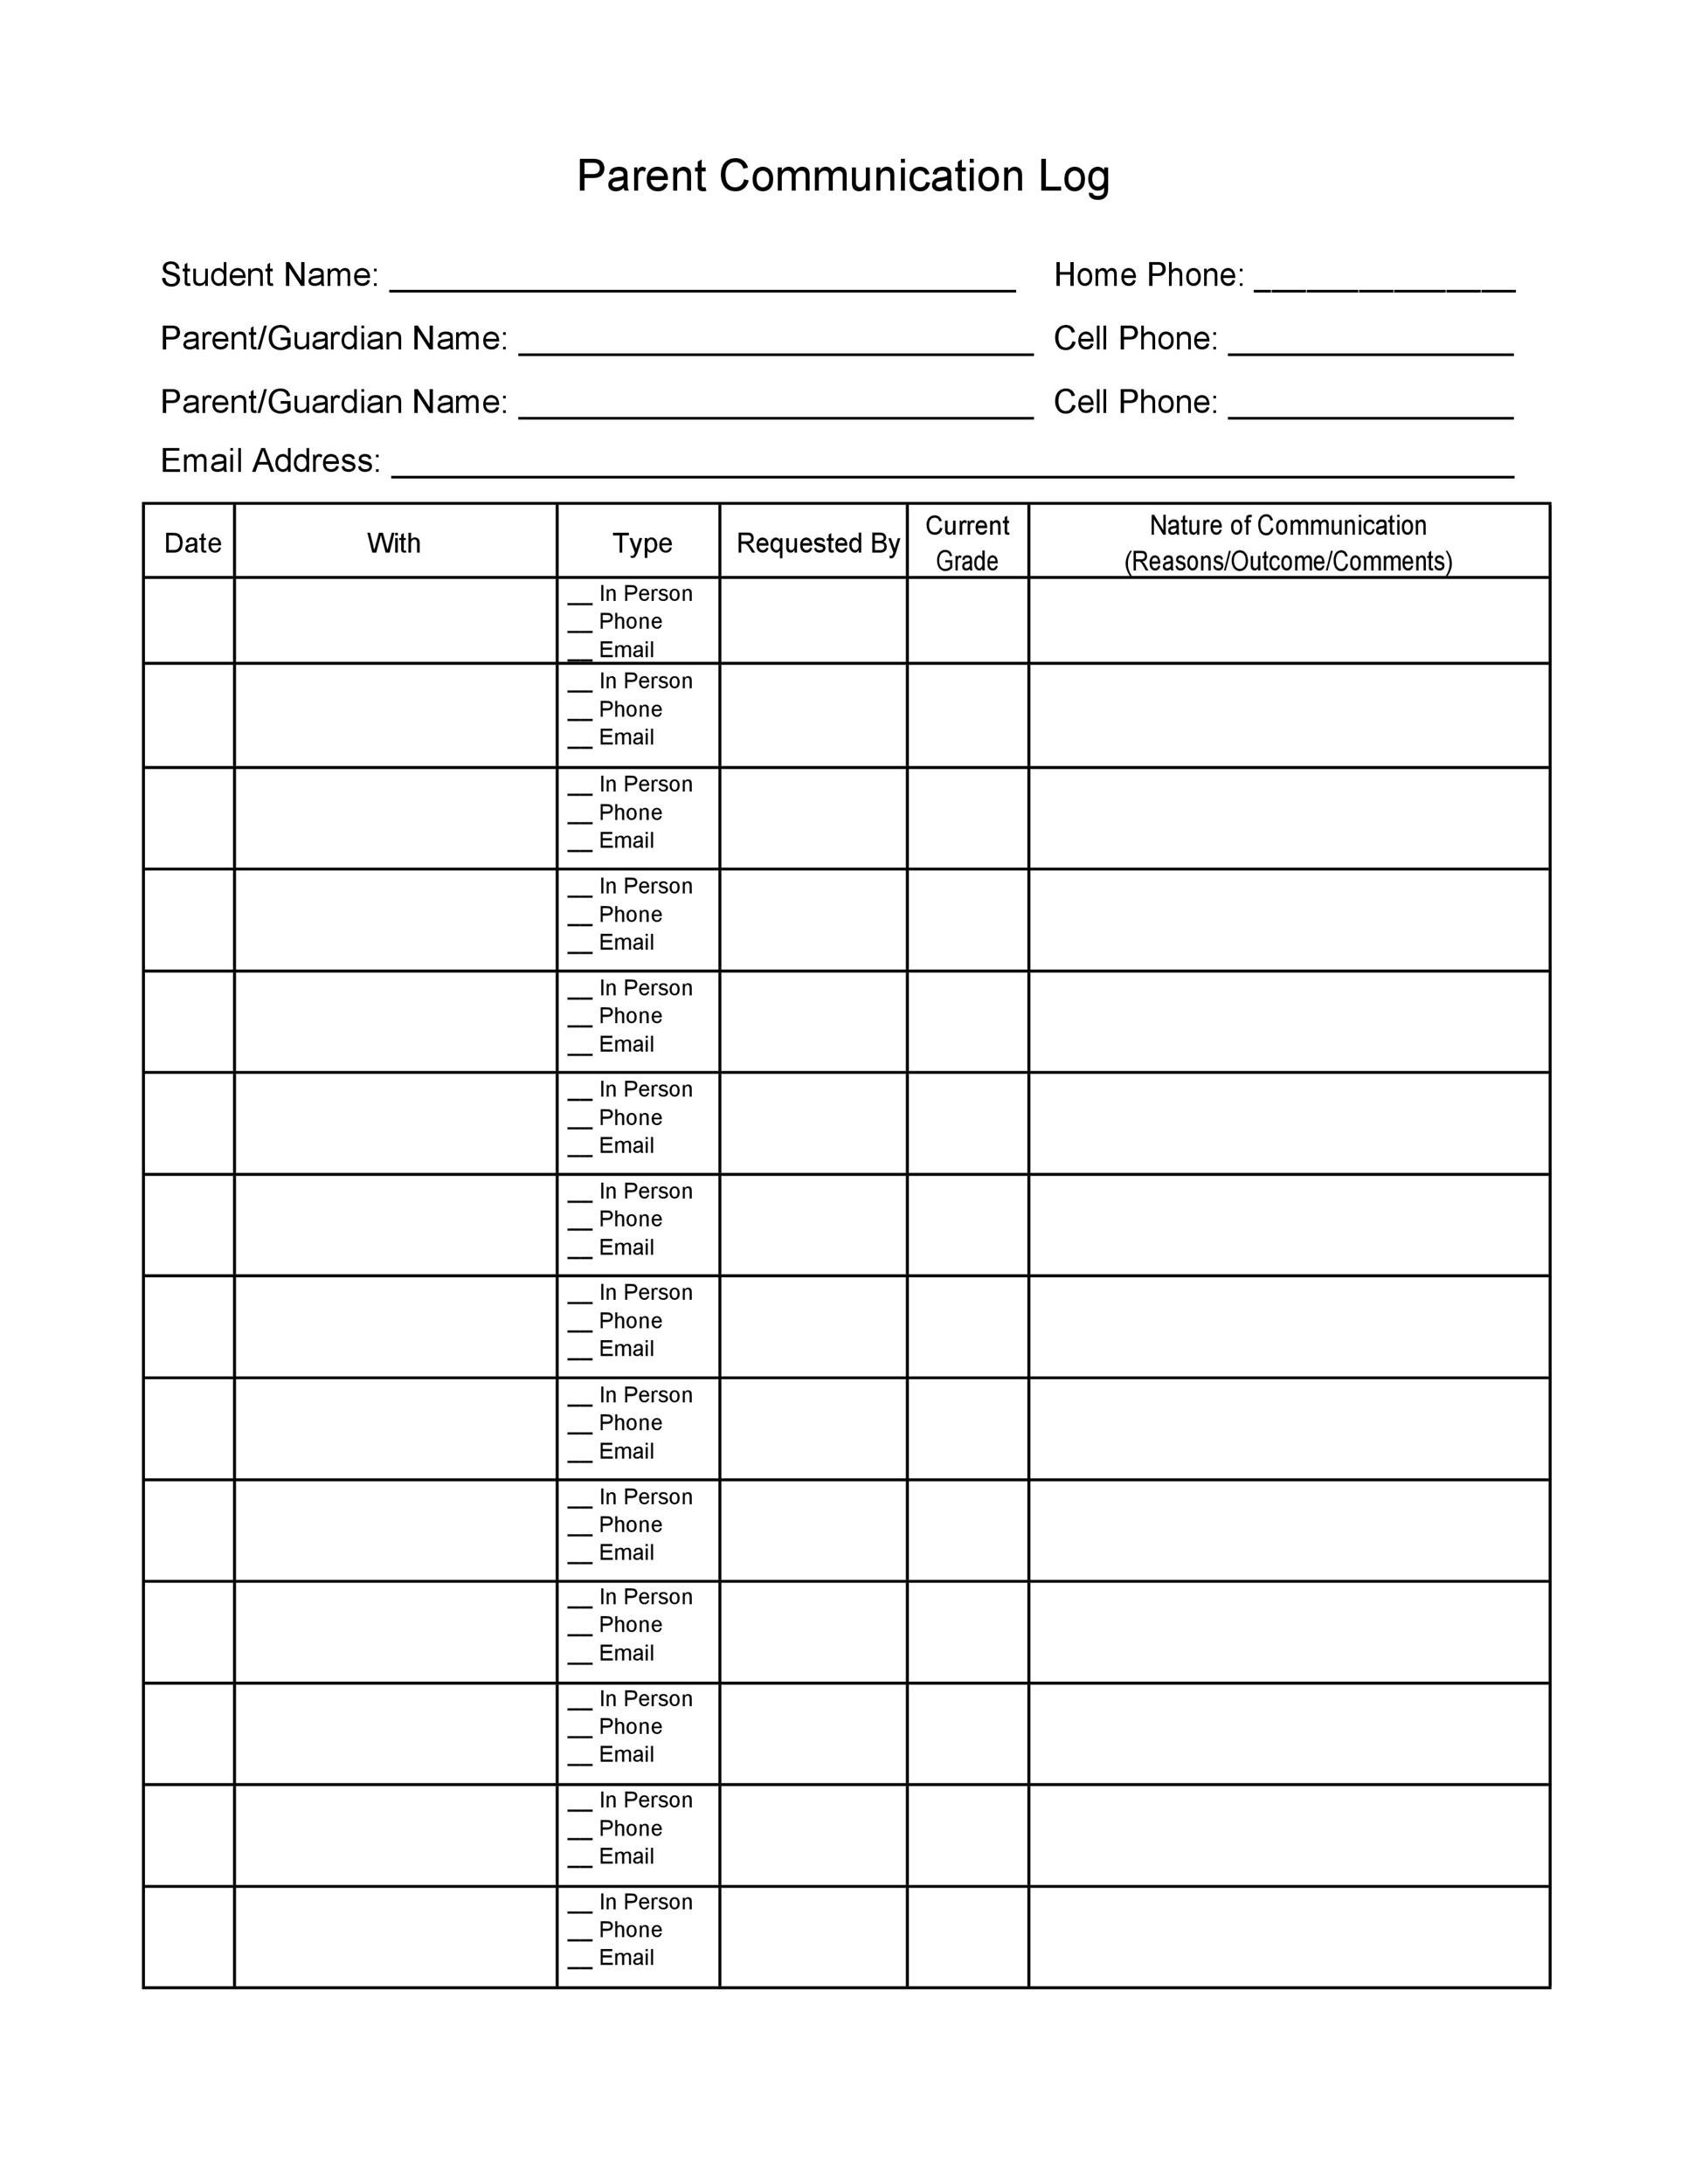 50 Editable Parent Contact Logs (Doc, Excel & PDF) ᐅ TemplateLab